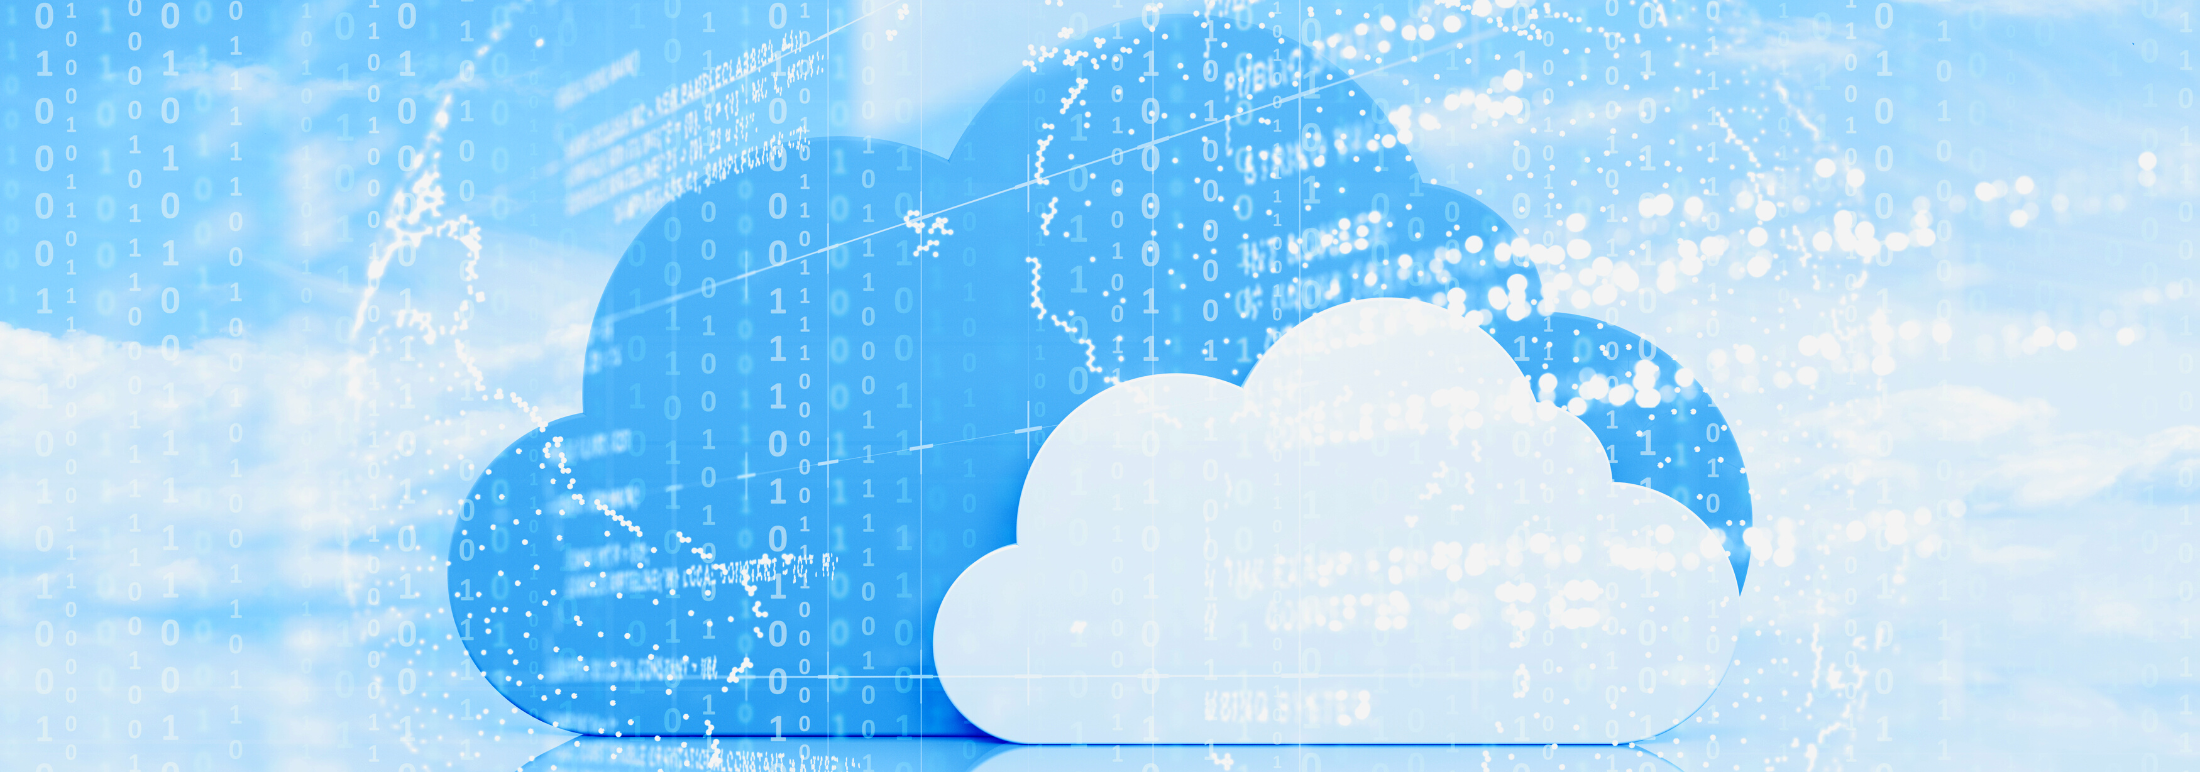 Cloud enablement services